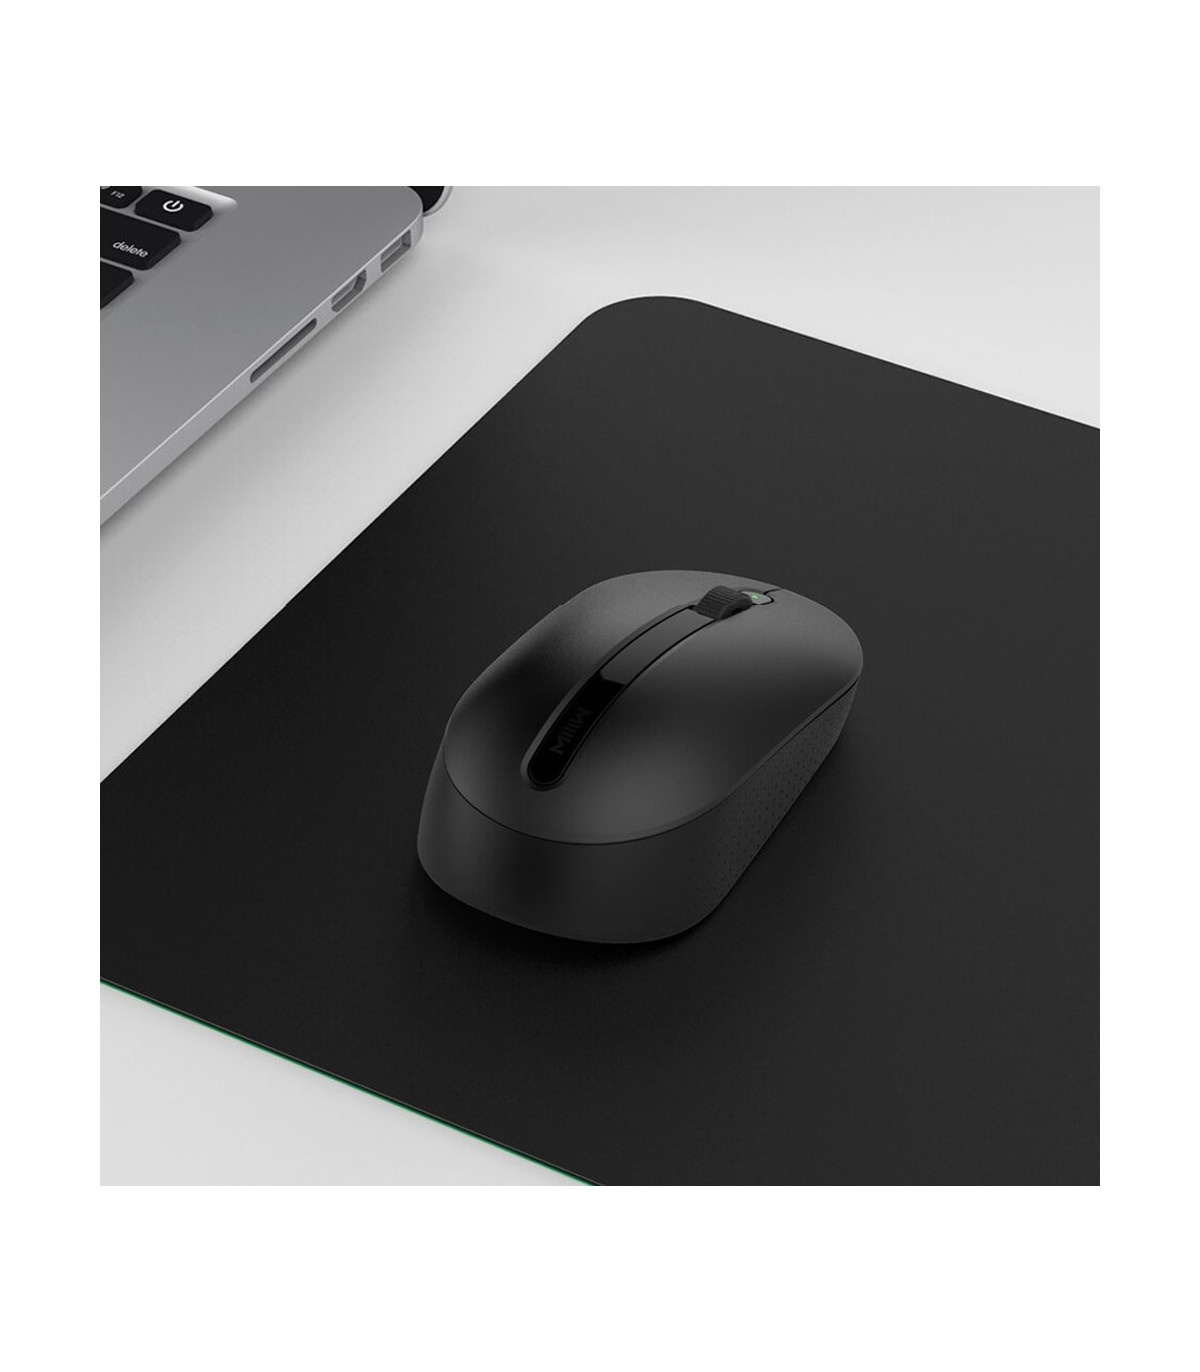 Мышь беспроводная xiaomi mi wireless. Мышь Xiaomi MIIIW Wireless Office Mouse. Мышка Xiaomi MIIIW Wireless Office Mouse mwmm01 Black. Беспроводная мышь Xiaomi MIIIW Wireless Office Mouse ( белая ). Xiaomi MIIIW Wireless Mouse Silent mwmm01 Black.